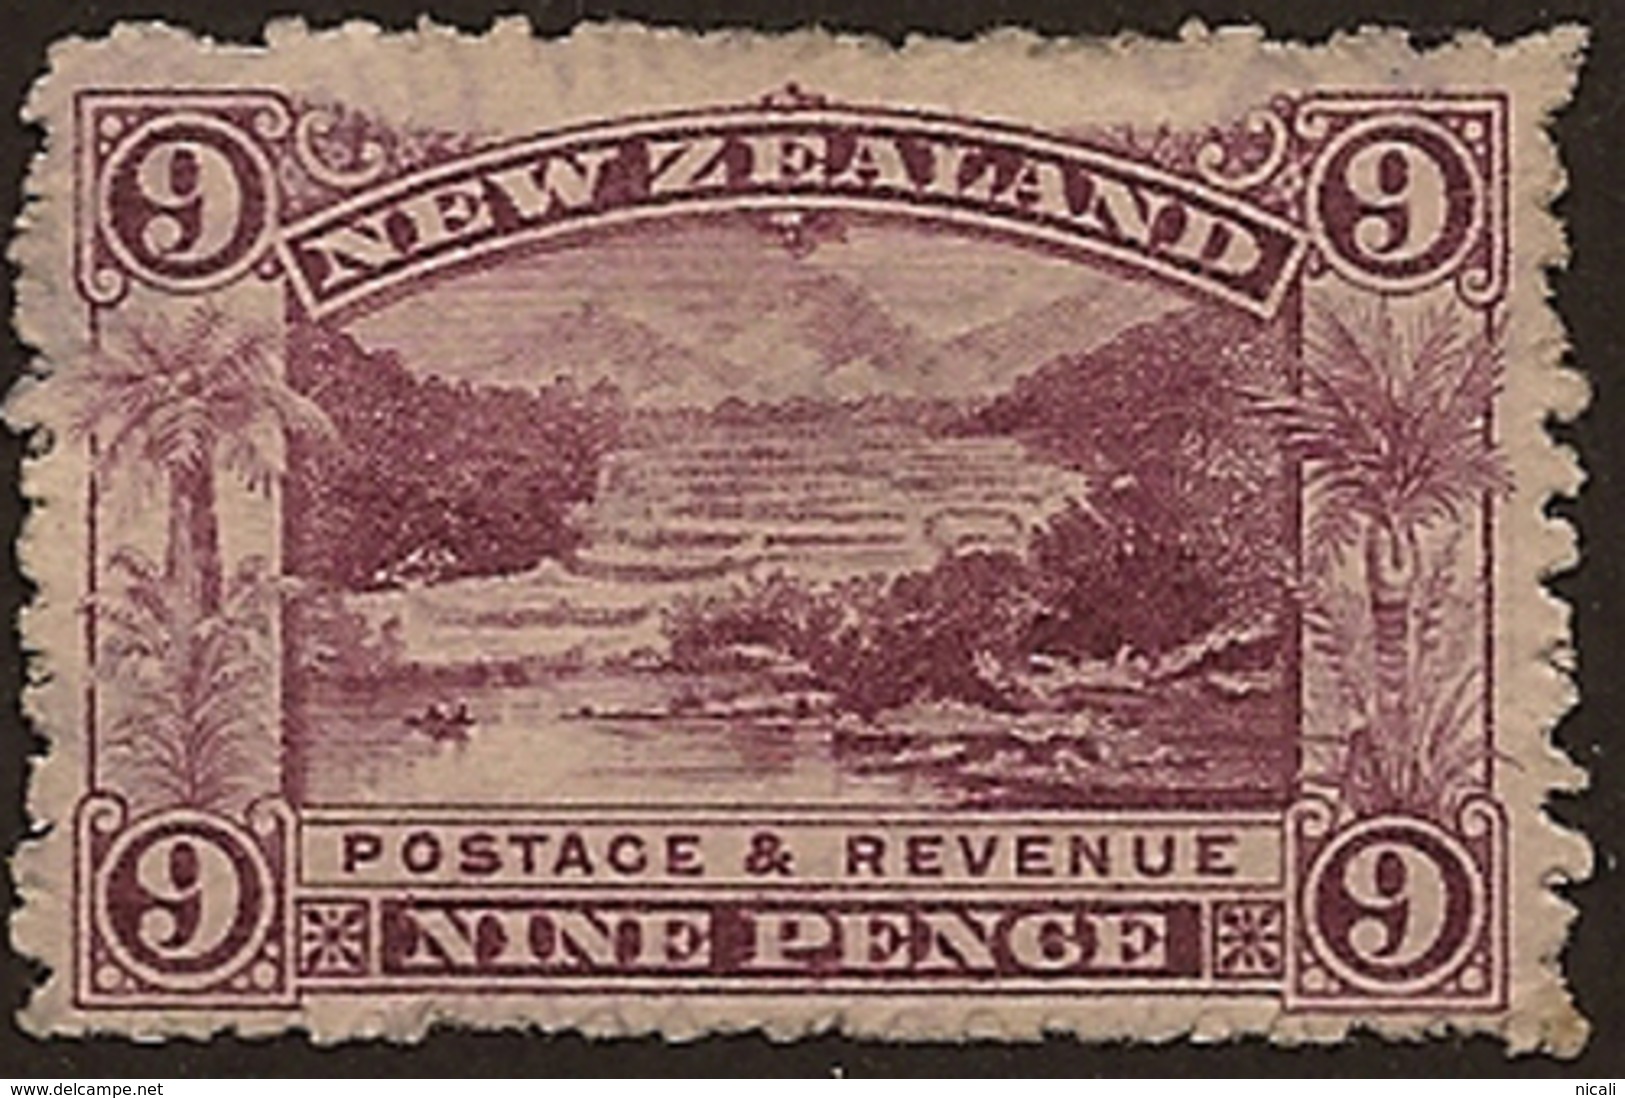 NZ 1898 9d Pink Terrace P11 SG 314 HM VE156 - Neufs